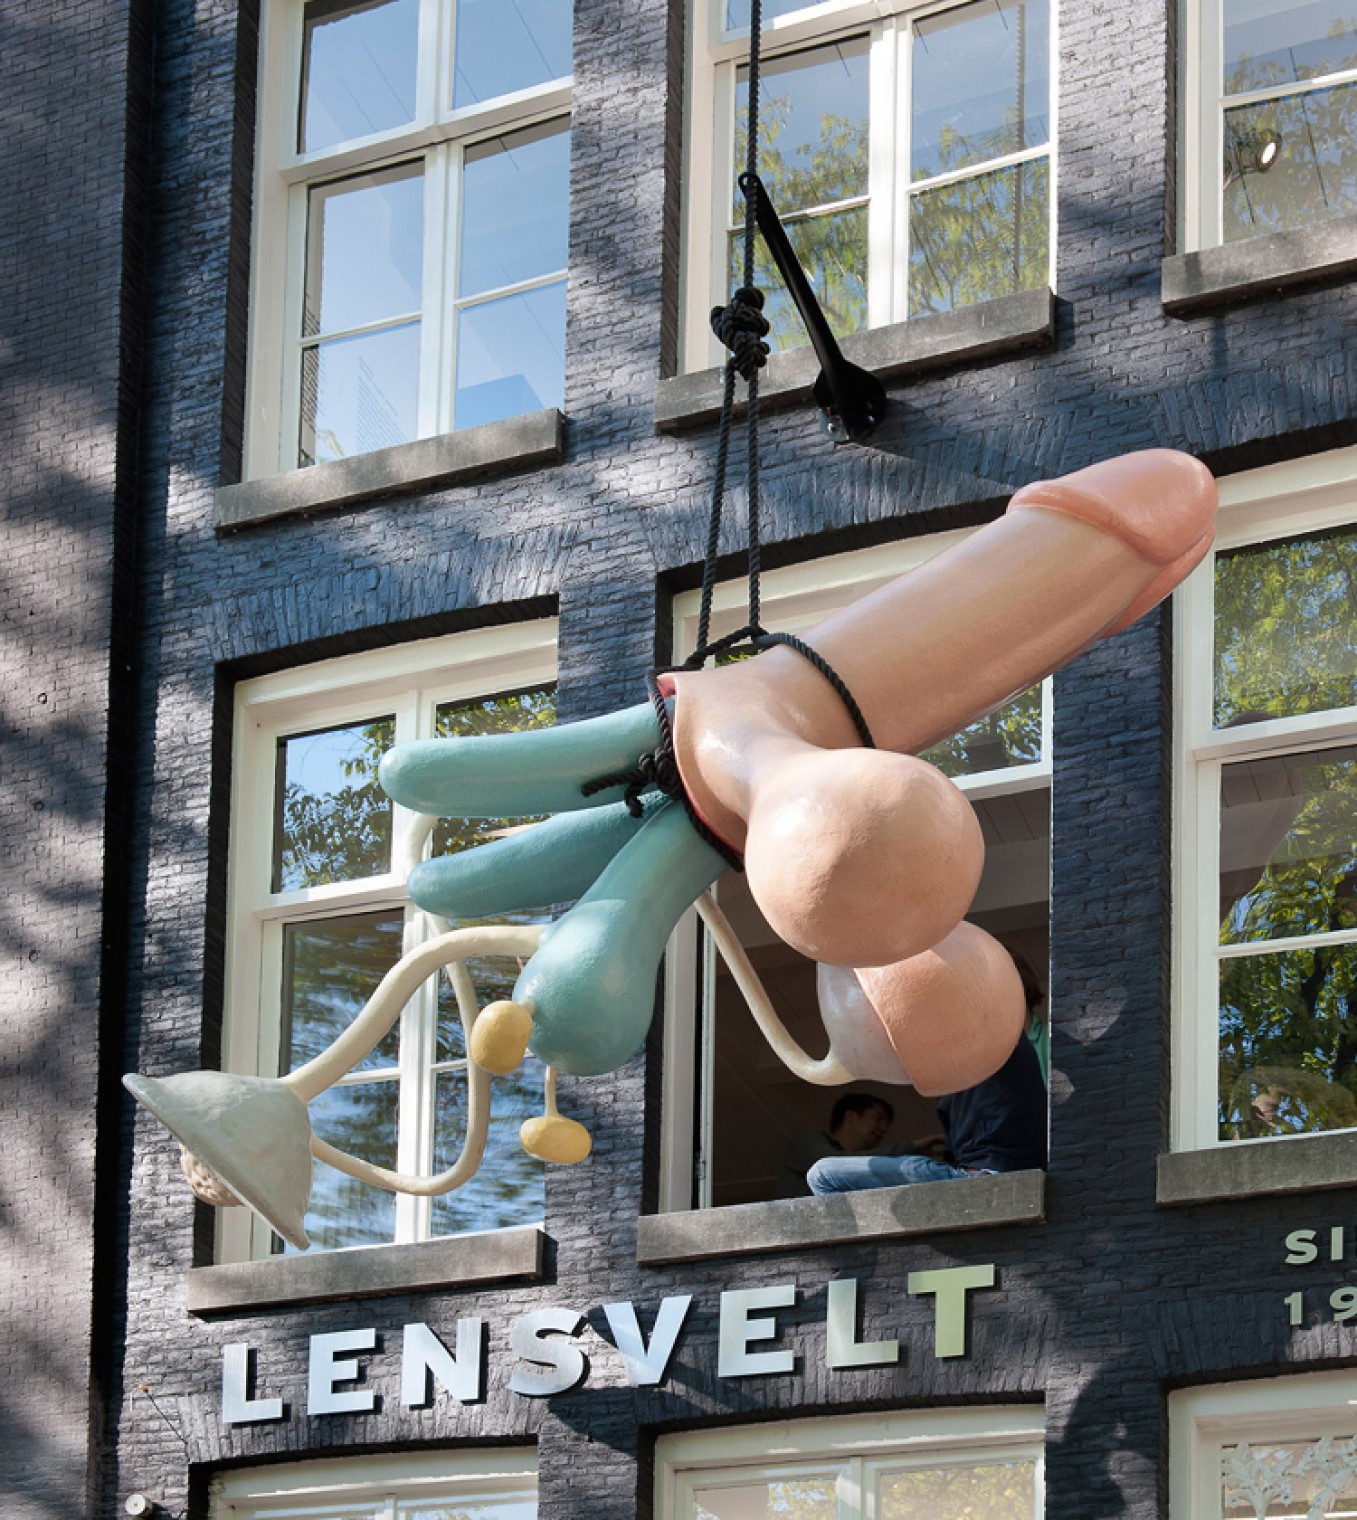  Hans Lensvelts favoriete kunstwerk van Joep van Lieshout werd omhoog gehesen